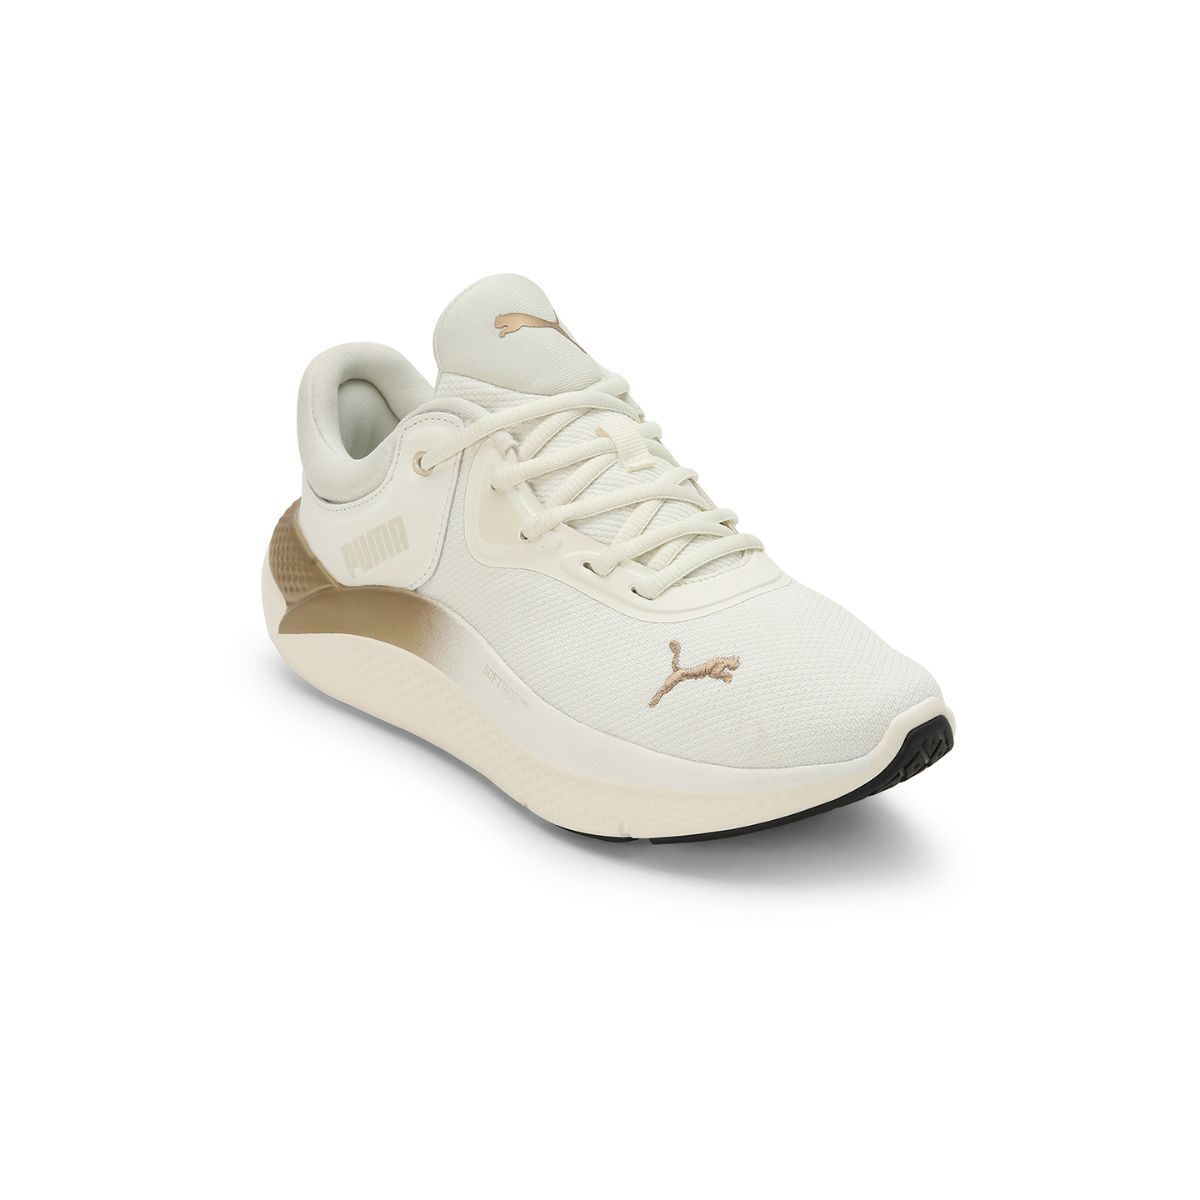 PUMA sneakers CA Pro Offwhite | NICKIS.com